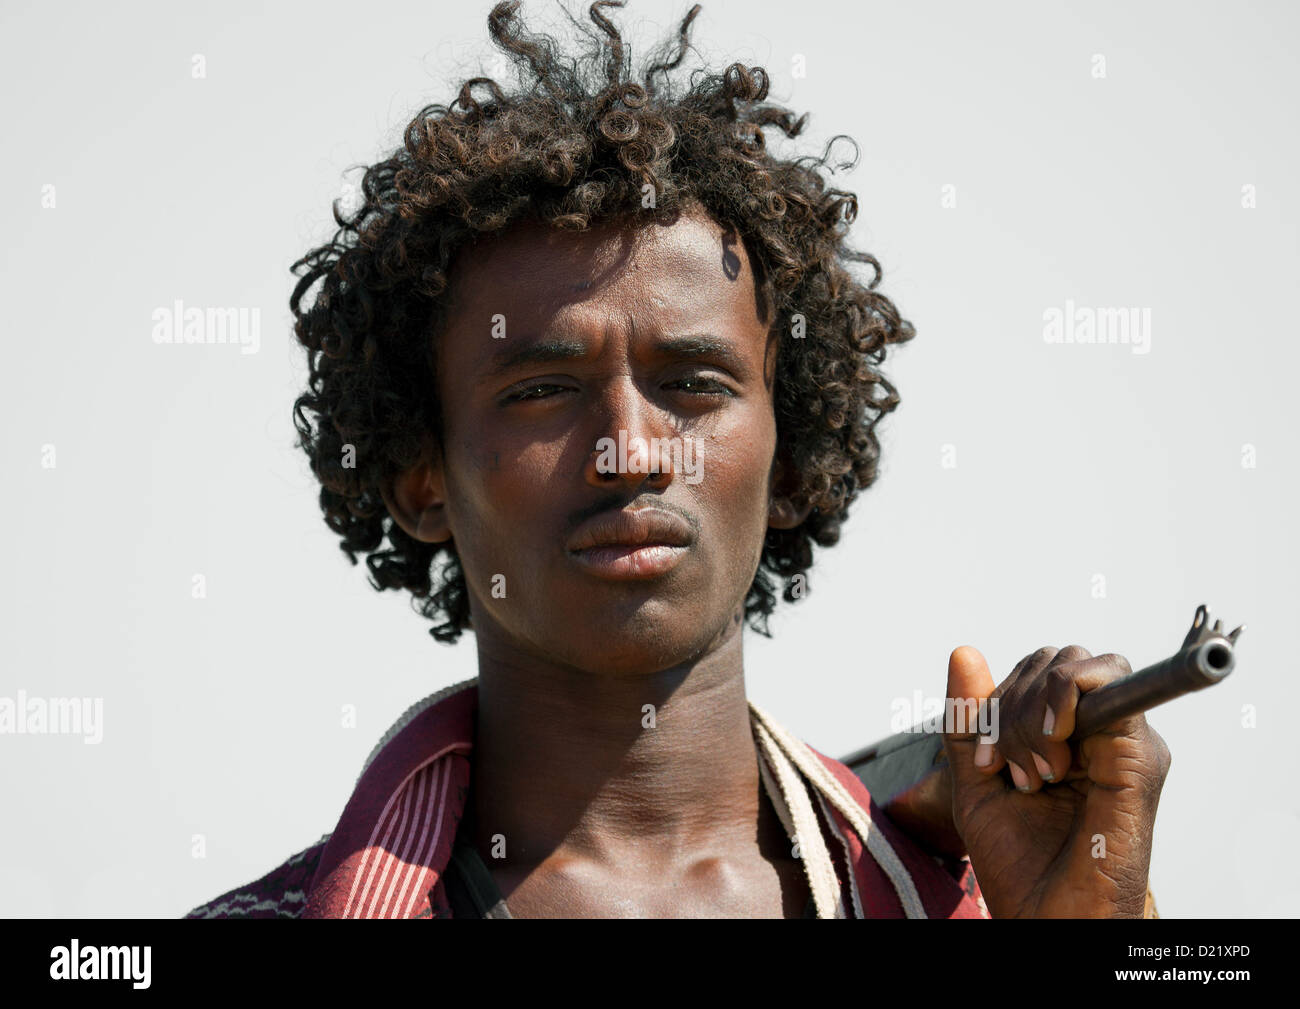 afar-tribe-warrior-assaita-afar-regional-state-ethiopia-D21XPD.jpg